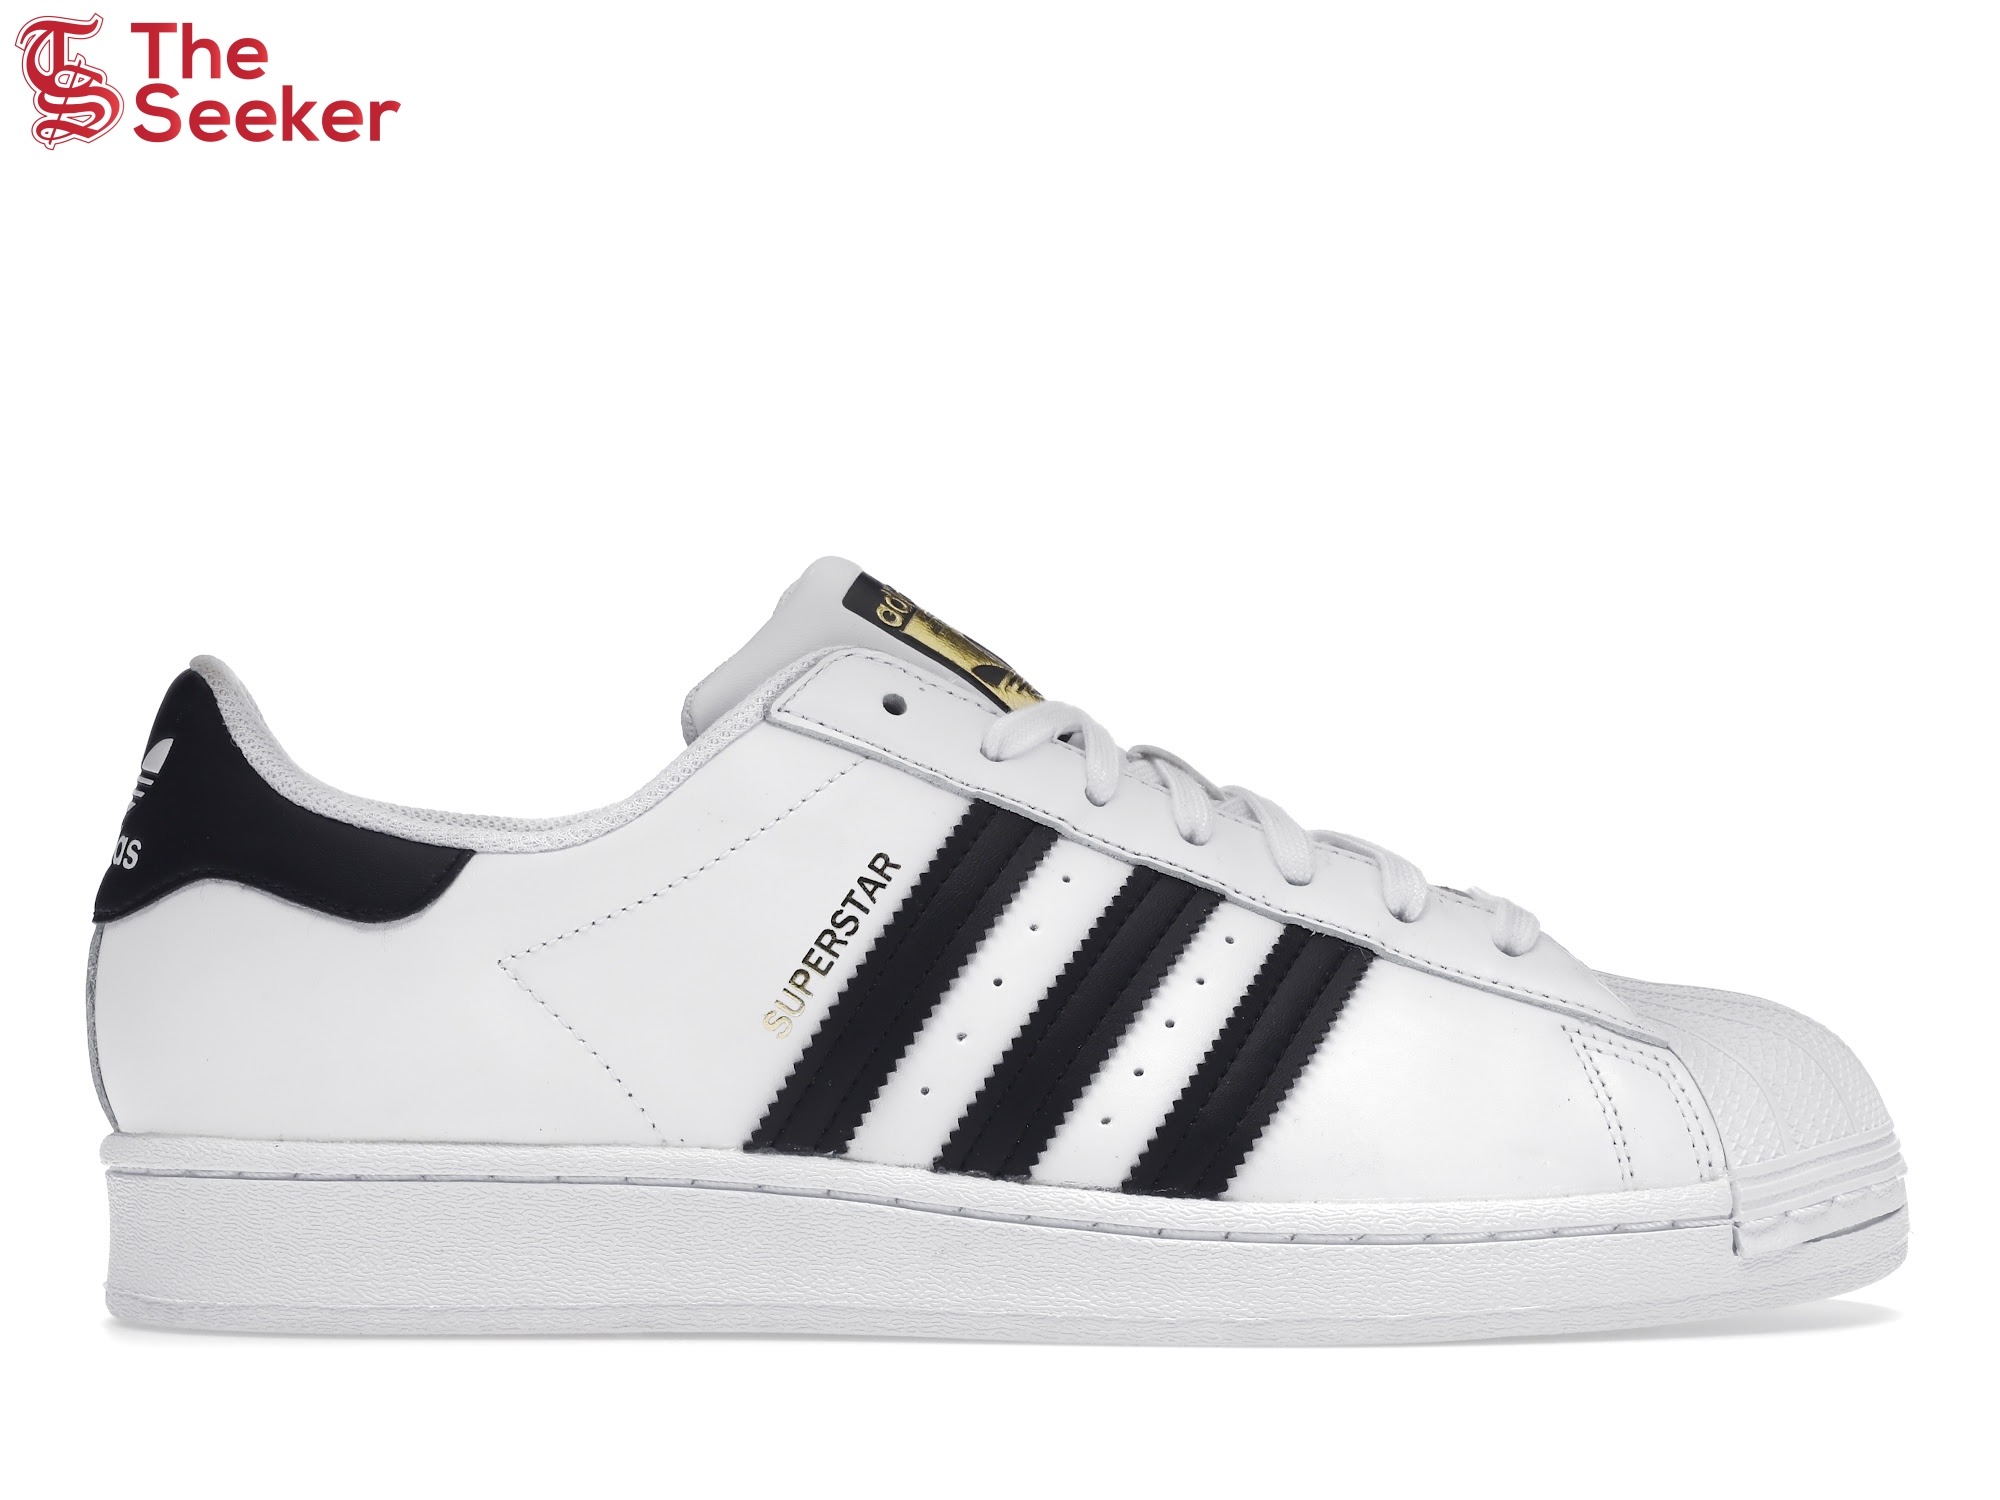 adidas Superstar White Black (2019)